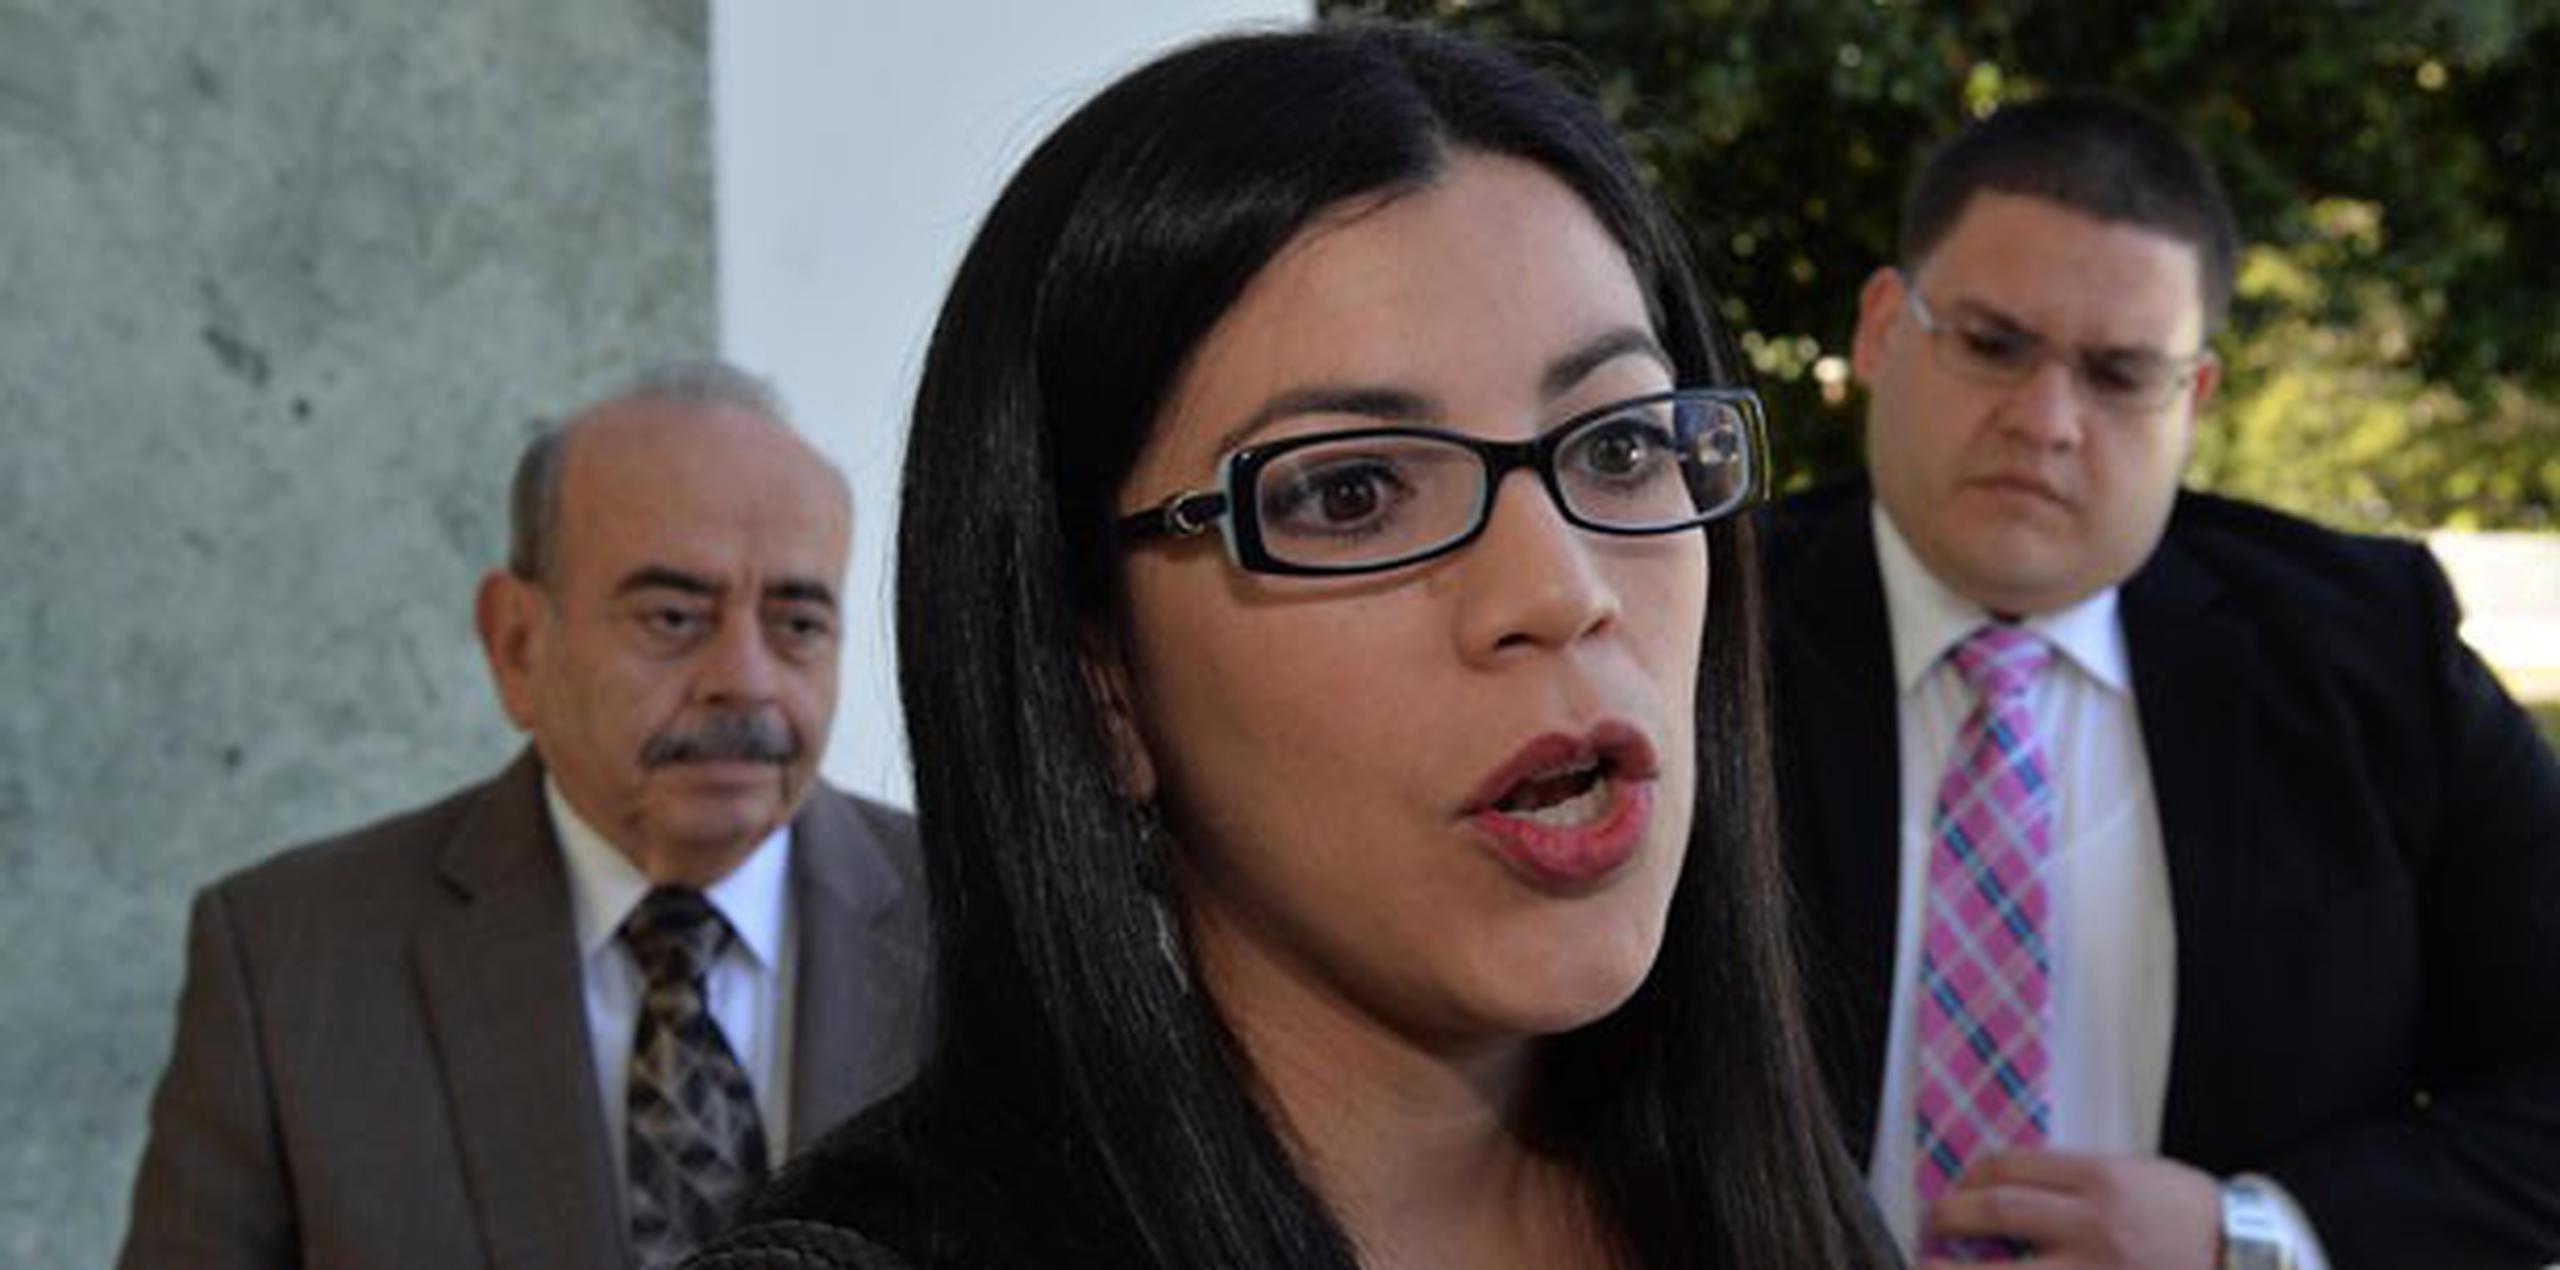 La abogada de la Oficina de la Administración de los Tribunales, Cristina Guerra Cáceres, se opuso por considerar que se dilatarían los procedimientos. (joserodriguez1@gfrmedia.com)